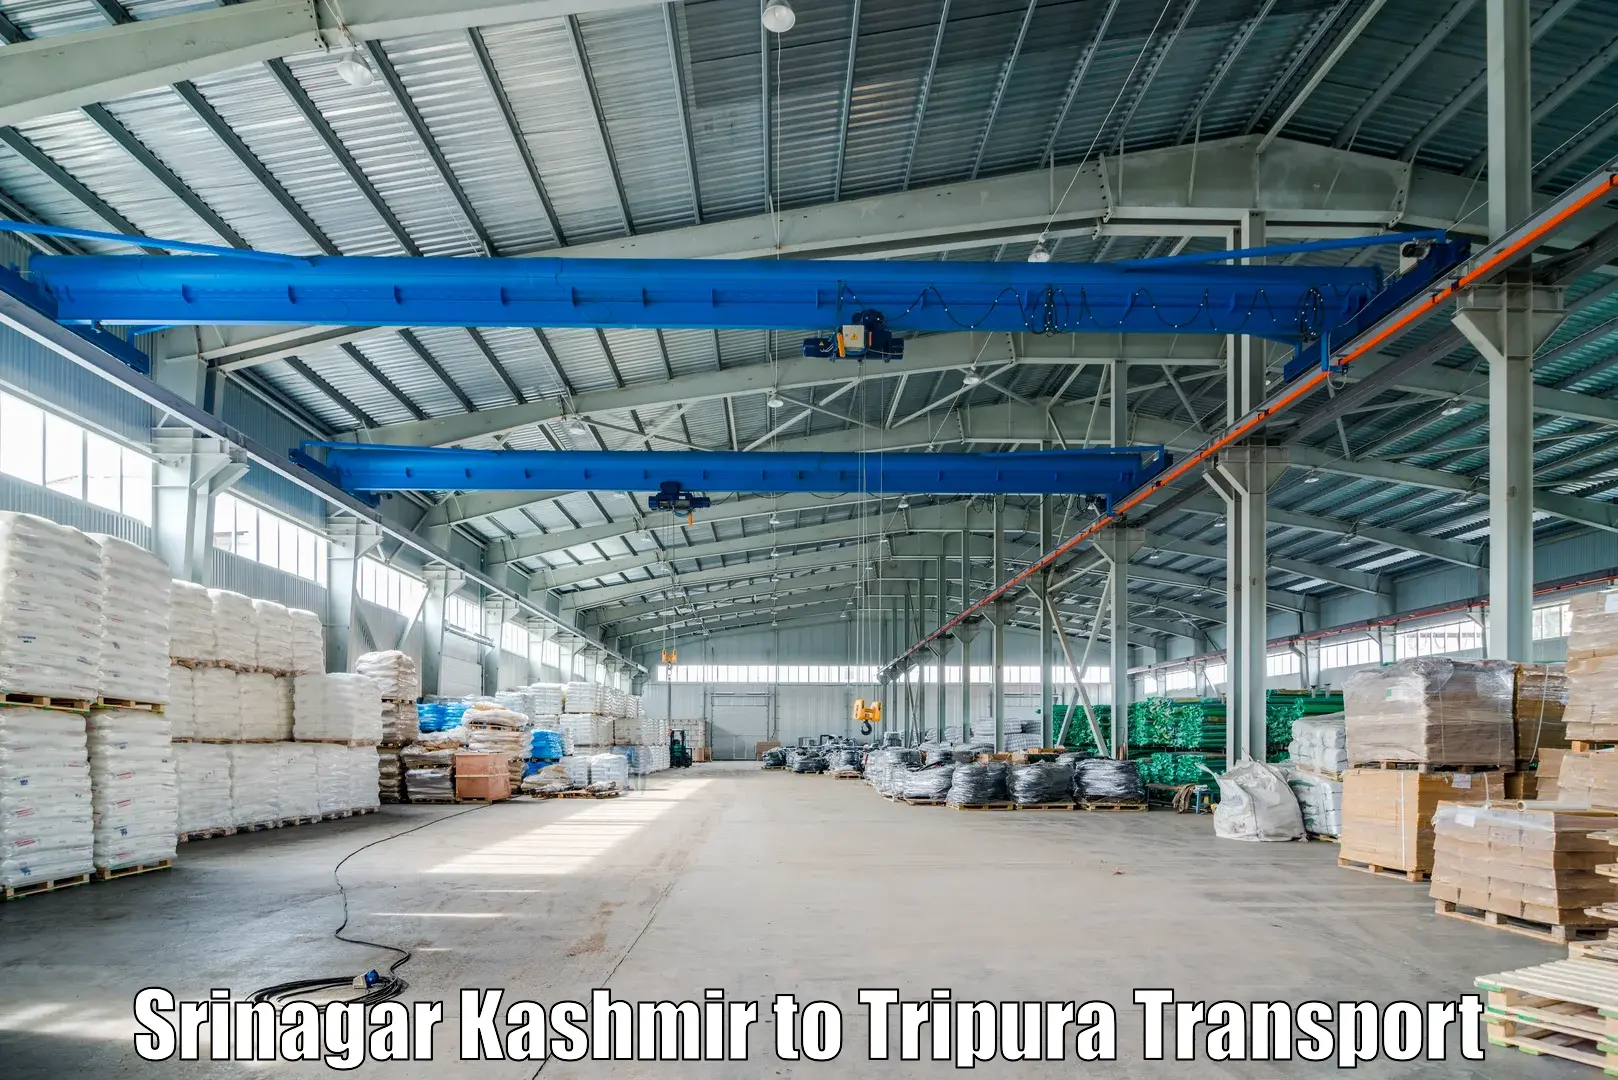 Commercial transport service Srinagar Kashmir to Manughat